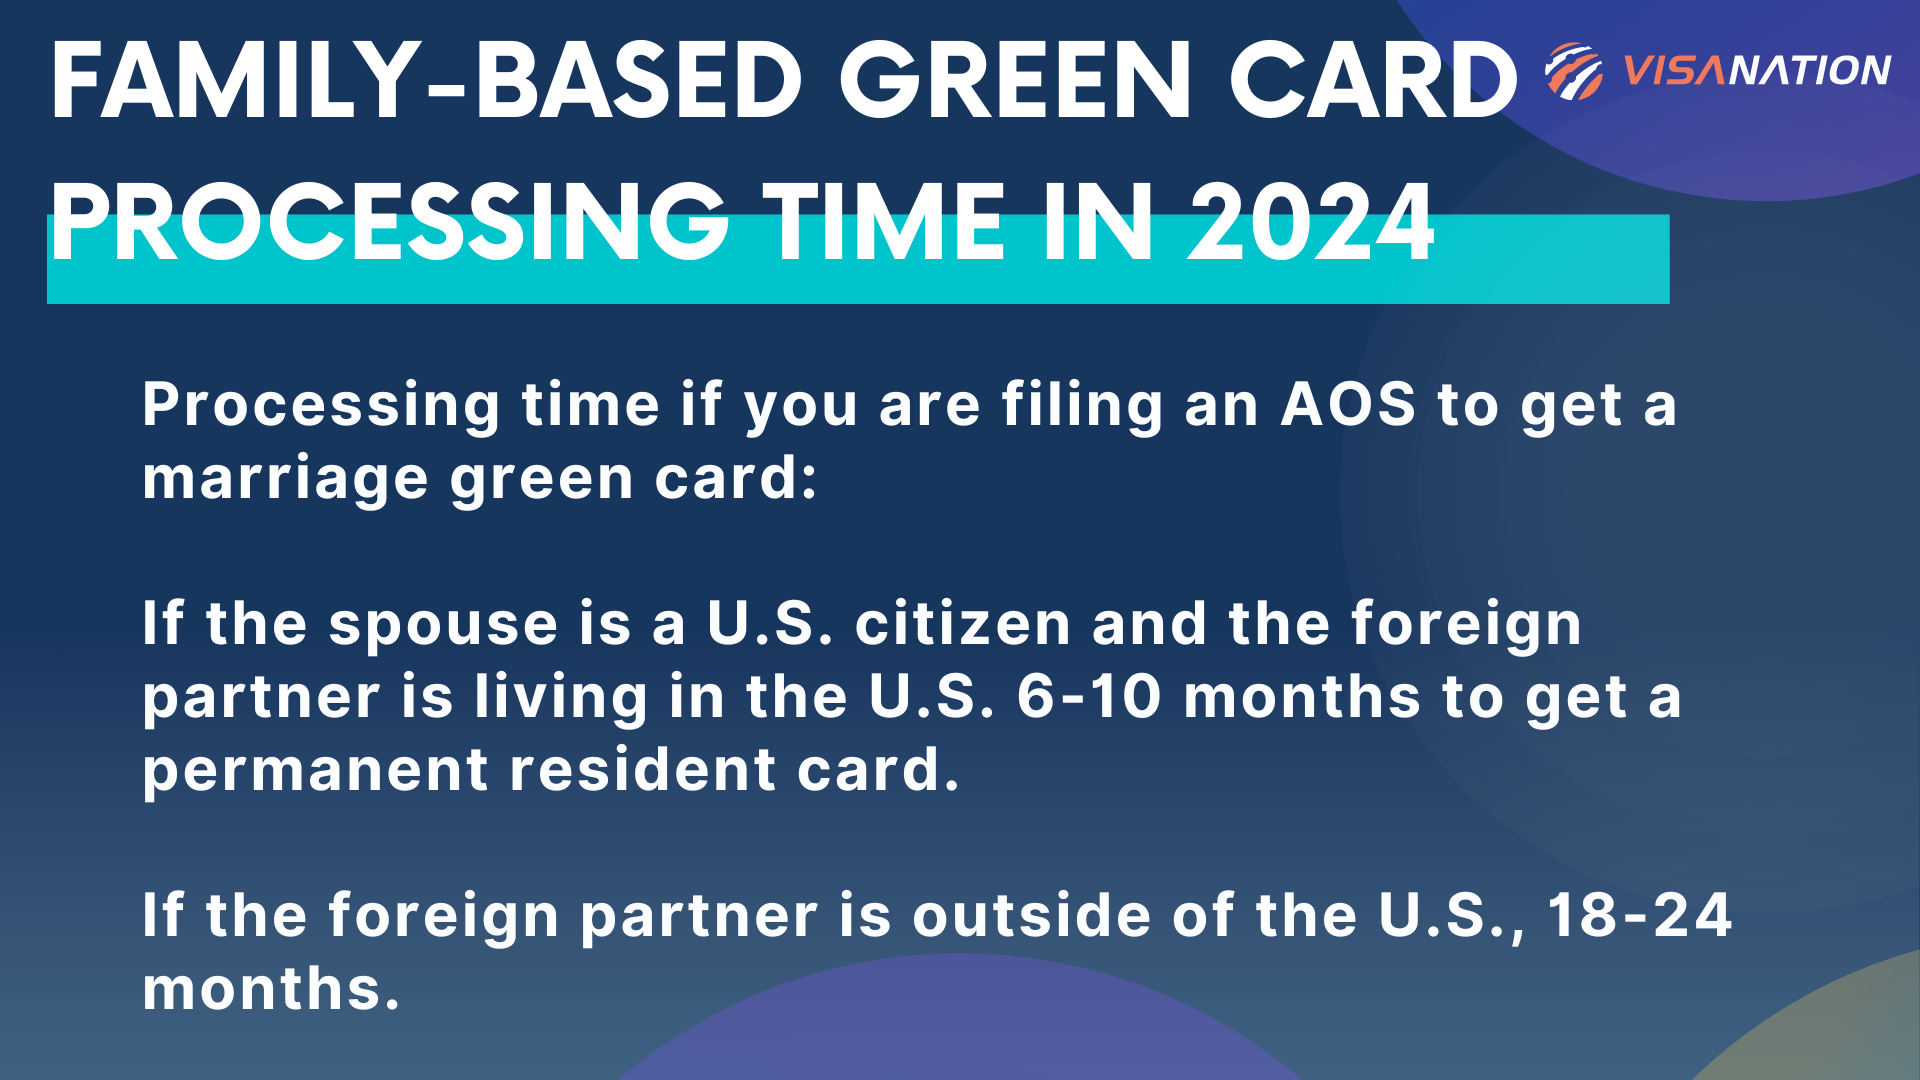 Tiempo de procesamiento de la tarjeta verde familiar en 2024